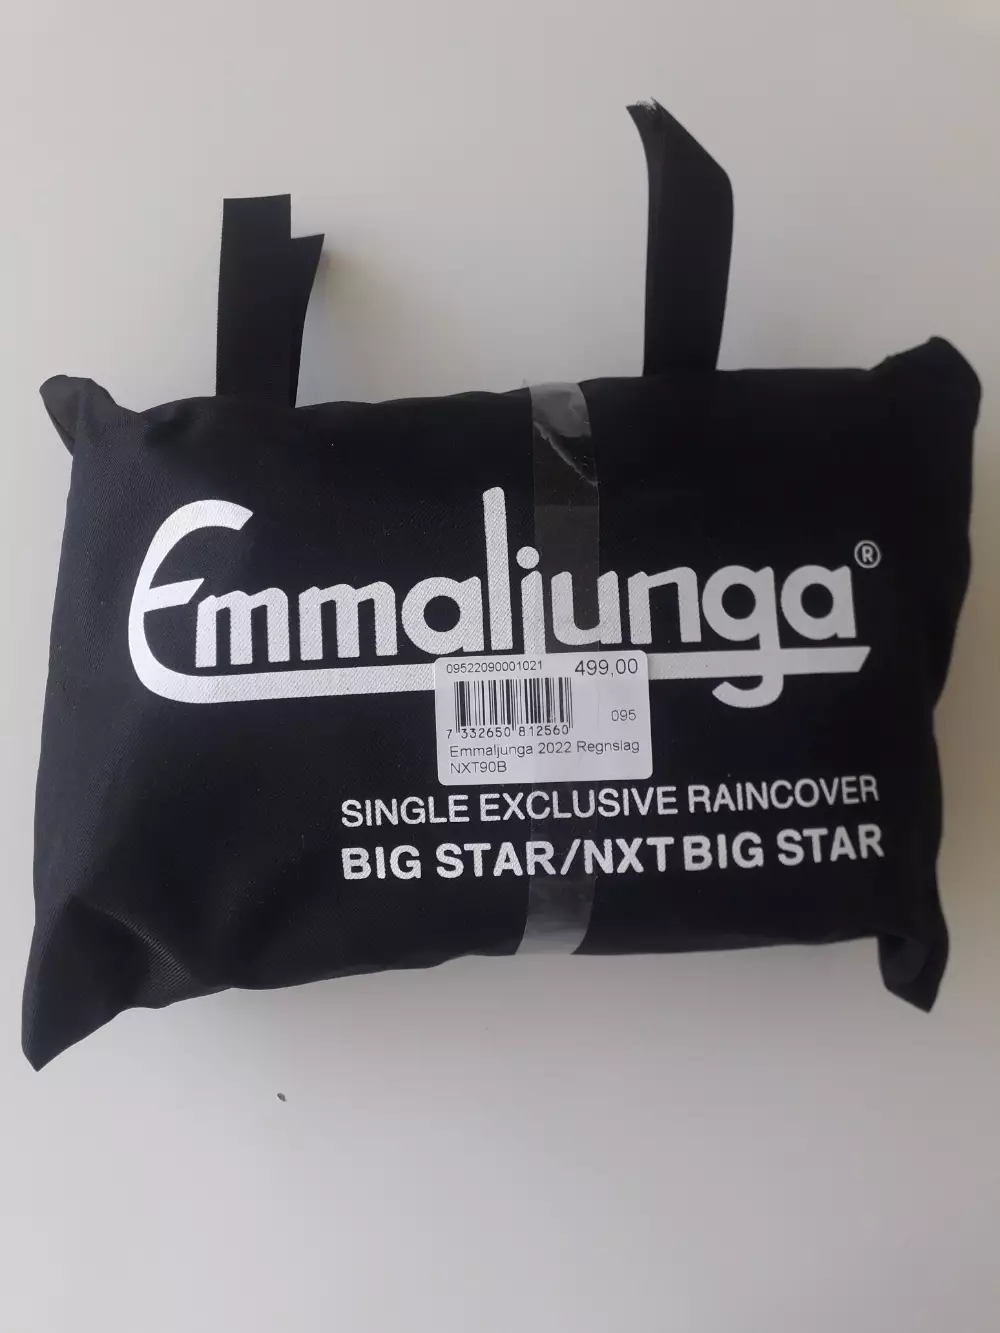 Køb Emmaljunga Regnslag Silla på Reshopper Shop til børn, mor og bolig